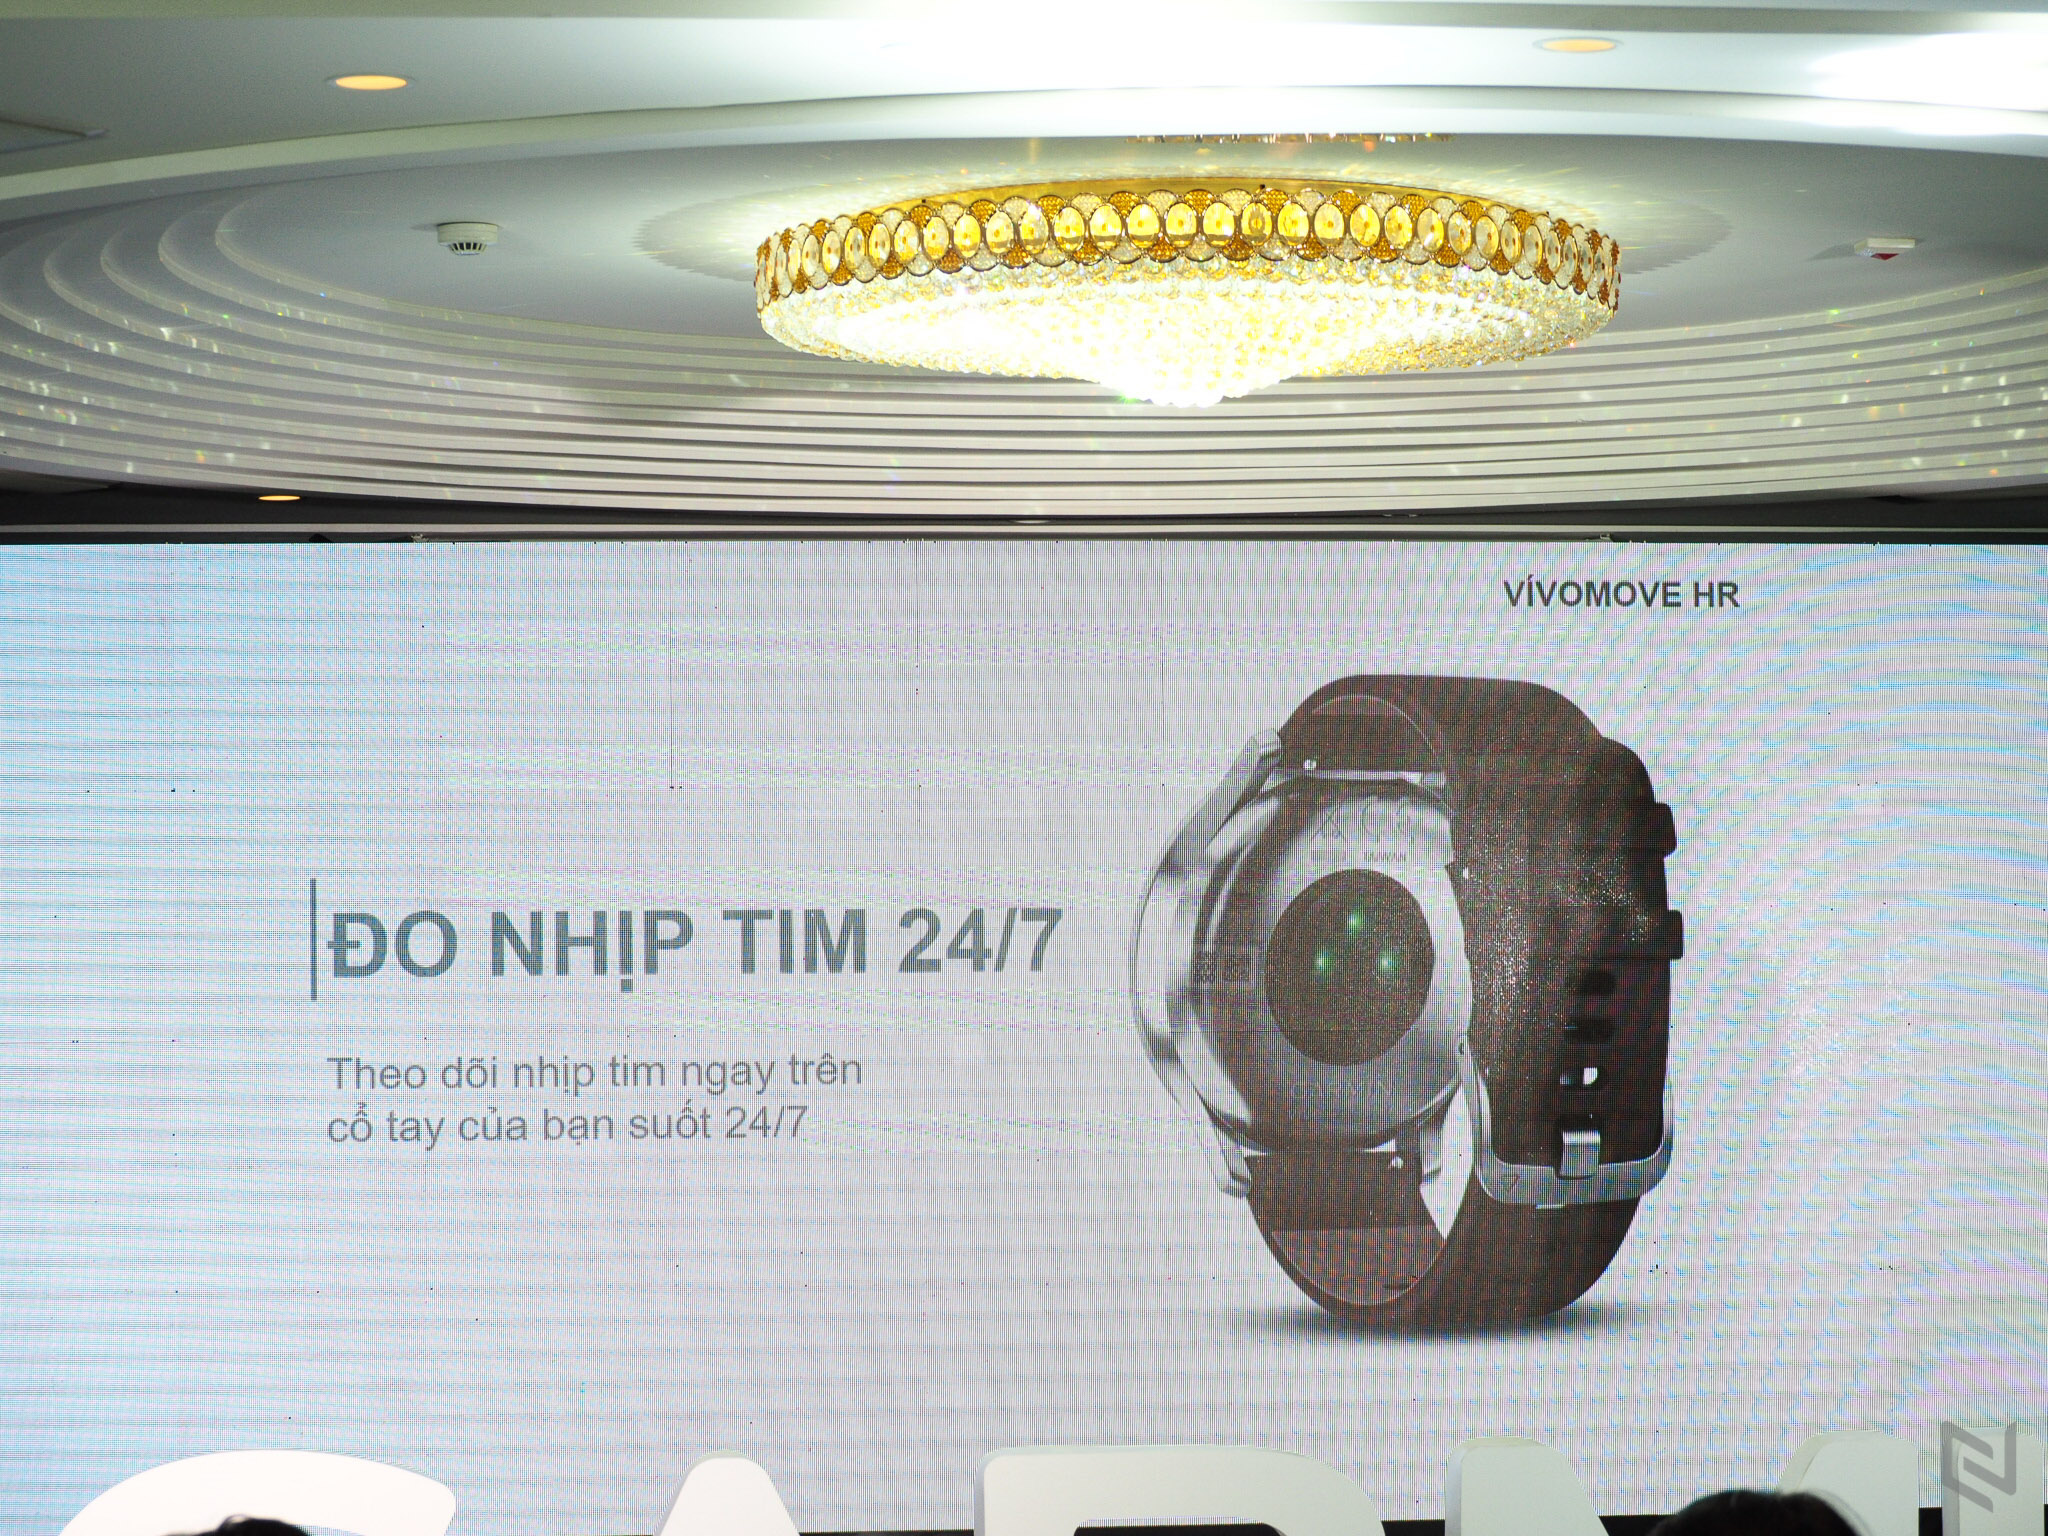 Garmin ra mắt hai đồng hồ thông minh Vivomove HR và Vivoactive 3 tại Việt Nam